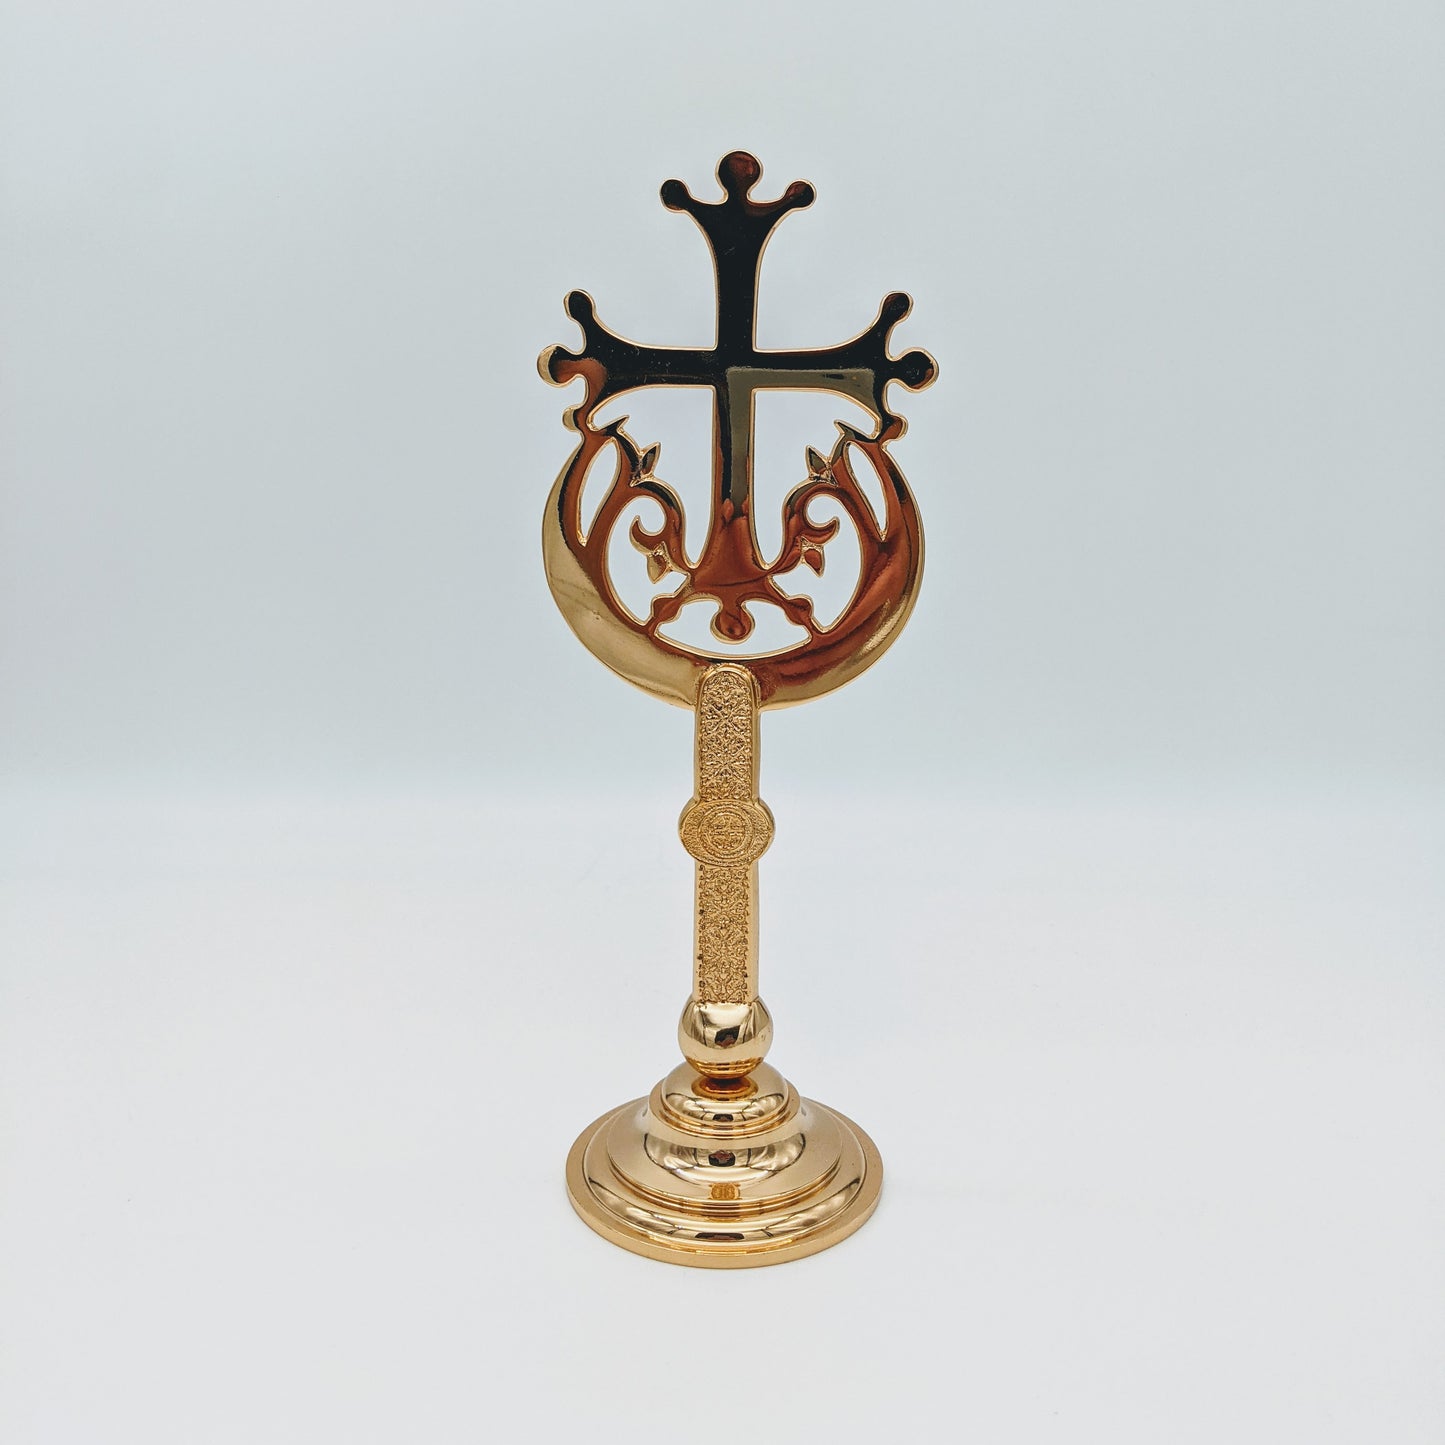 Μεταλικός επιτραπέζιος σταυρός σε χρυσό χρώμα της Ιεράς Μονής Χιλανδαρίου